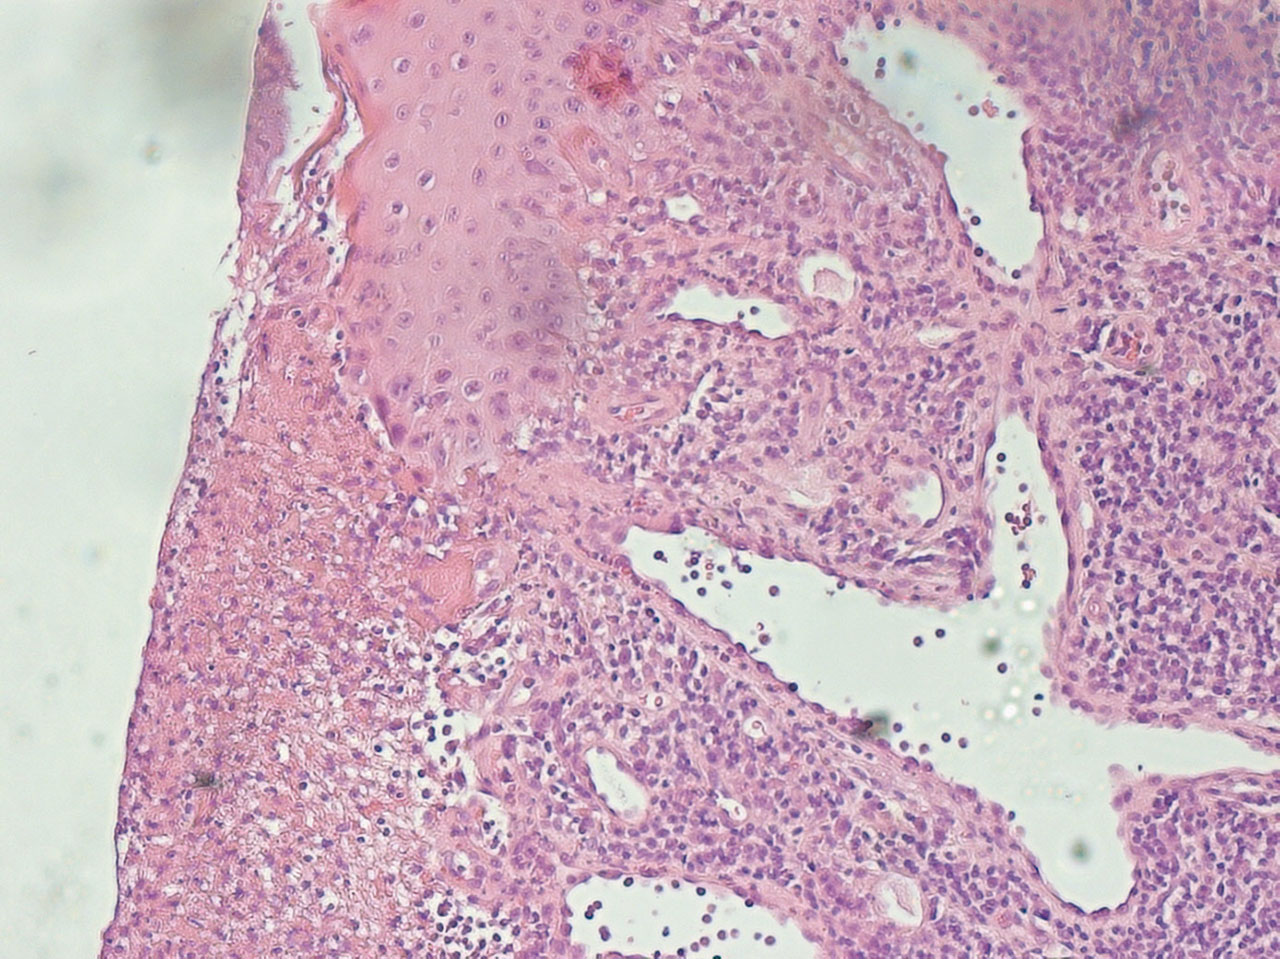 Abb. 8 Histologisches Bild einer aktinischen Keratose (Hämatoxylin-Eosin-Färbung, 10-fache Vergrößerung). Charakteristisch ist die hier zu sehende akanthotische Verbreiterung der Epidermis durch ein fingerförmiges Proliferat atypischer Keratinozyten.